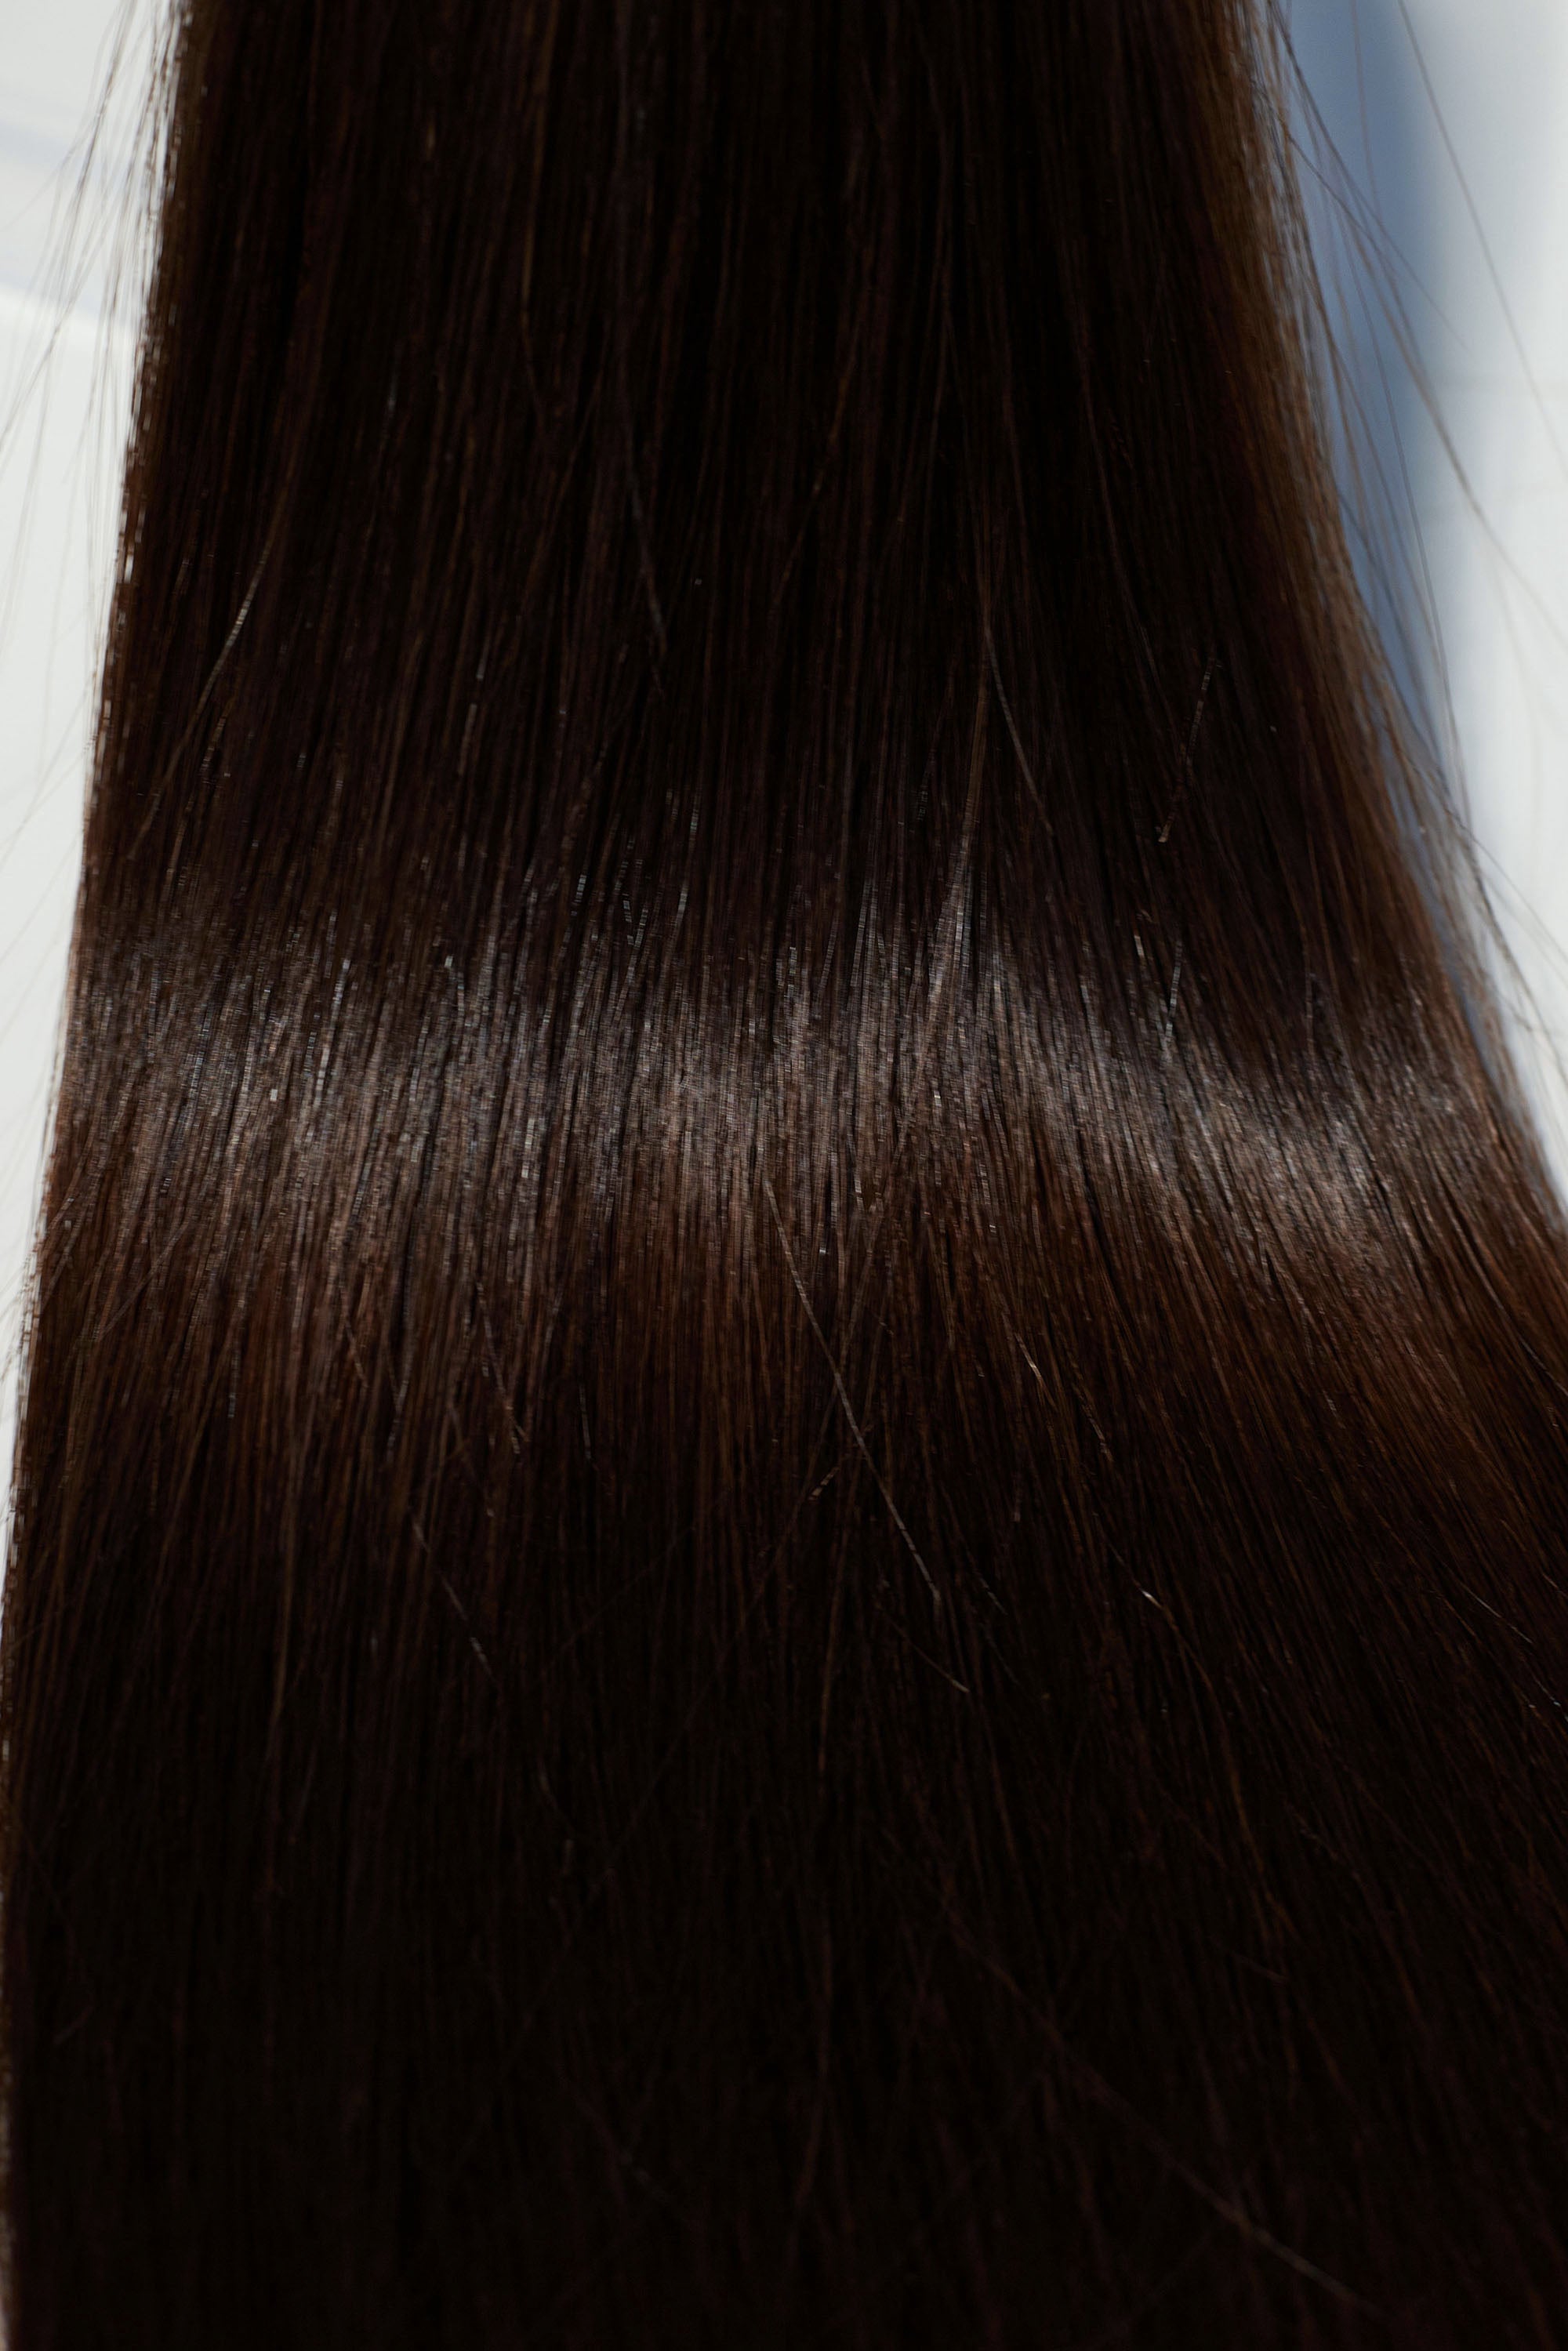 Behair professional Bulk hair "Premium" 28" (70cm) Natural Straight Dark Coffee Brown #2 - 25g hair extensions